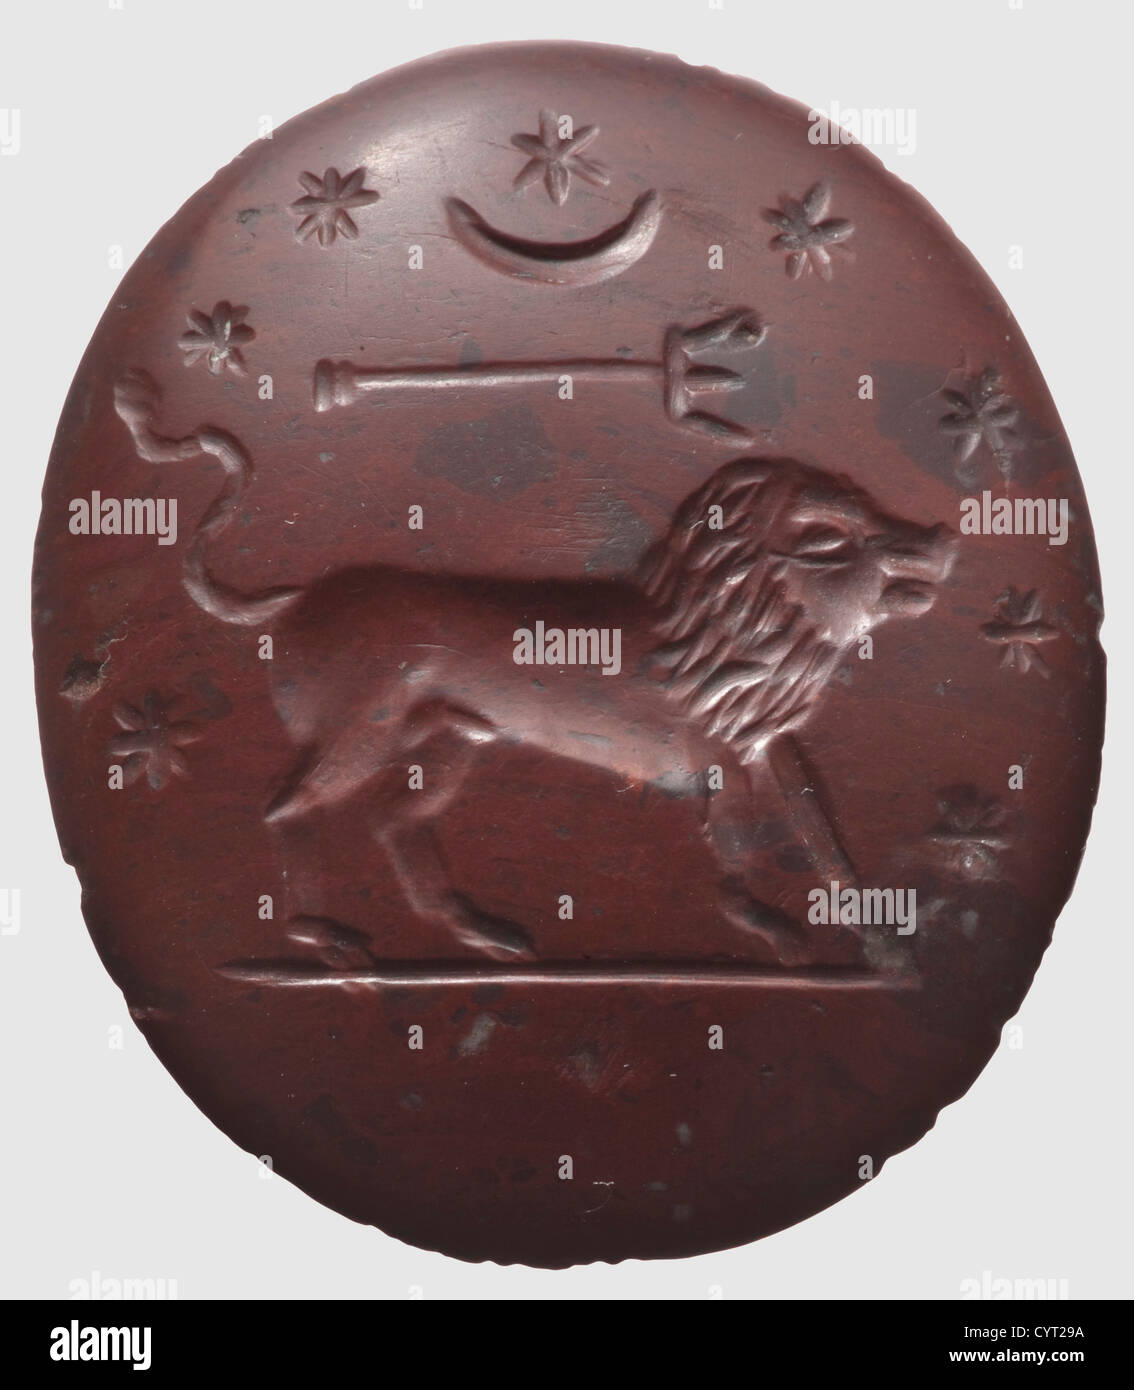 Un Abraxas romain intaglio,Méditerranée orientale,2nd/3rd Century A.D. Jasper poli rouge avec image incisée, l'obverse montrant une figure Abraxas, avec un geste de bénédiction, un ornant et une inscription grecque, l'inverse avec un lion surmonté d'un croissant et huit étoiles. L'arête est légèrement heurtée. Hauteur 3.2. Cm. La figure d'Abraxas, vénérée comme un symbole du Dieu le plus haut, est basée sur les enseignements des basilides gnostiques égyptiens (qui sont morts en ca. 145 A.D.). Des amulettes comme la pièce actuelle étaient conservées dans la main, sous la langue ou cousues dans le vêtement, droits additionnels-Clearences-non disponibles Banque D'Images